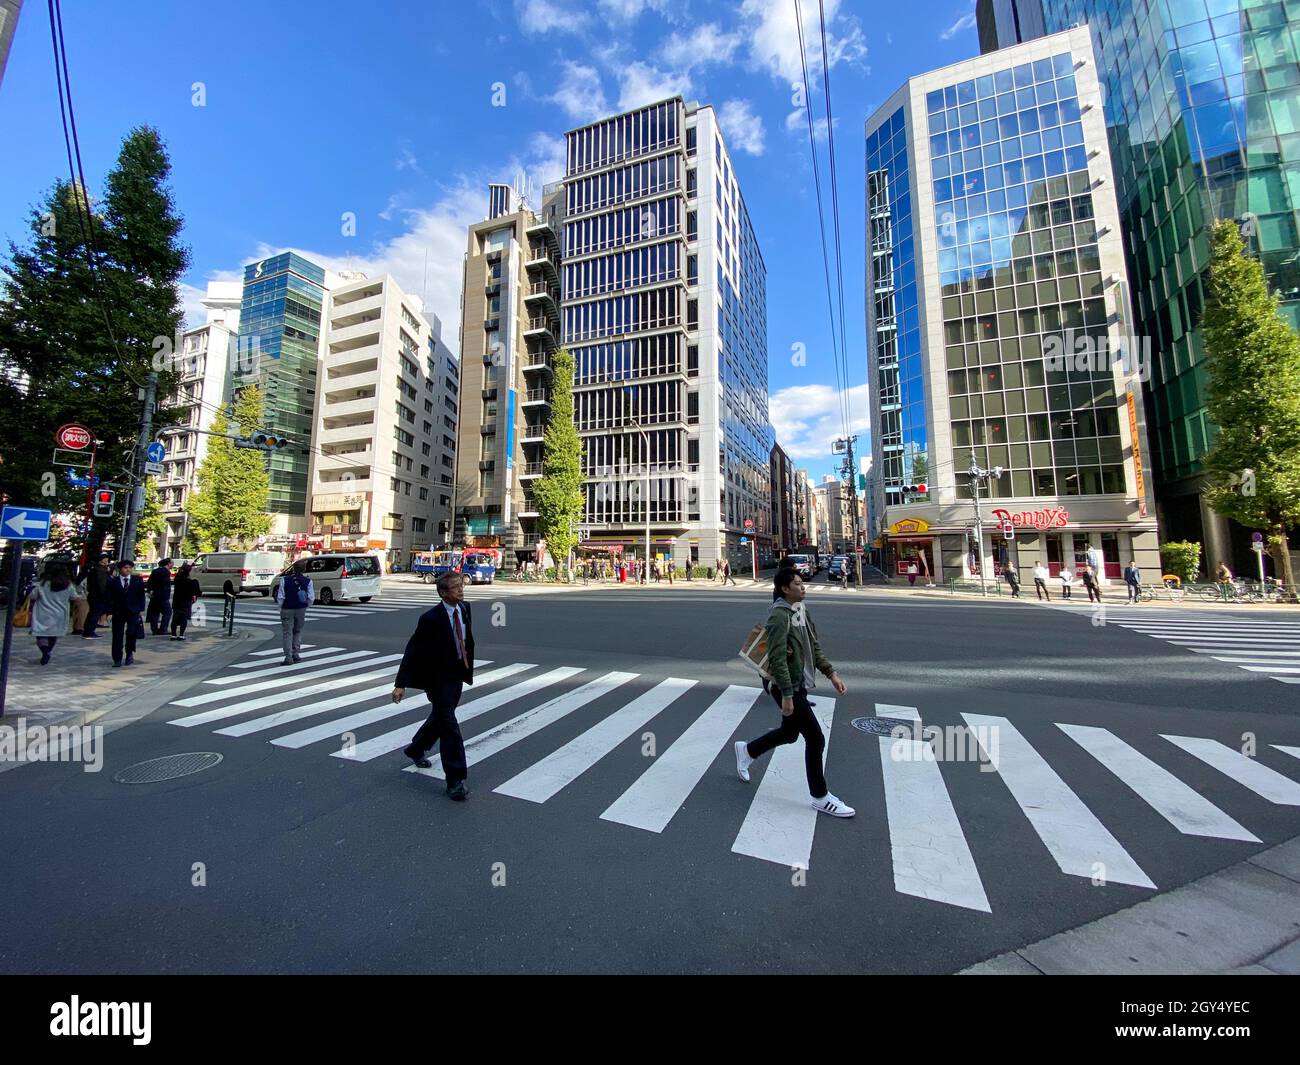 Tokyo, Japon - 20 novembre 2019 : Croswalk de l'autre côté de la rue pour la sécurité lorsque les gens traversent la rue, les passages blancs sont marqués Banque D'Images